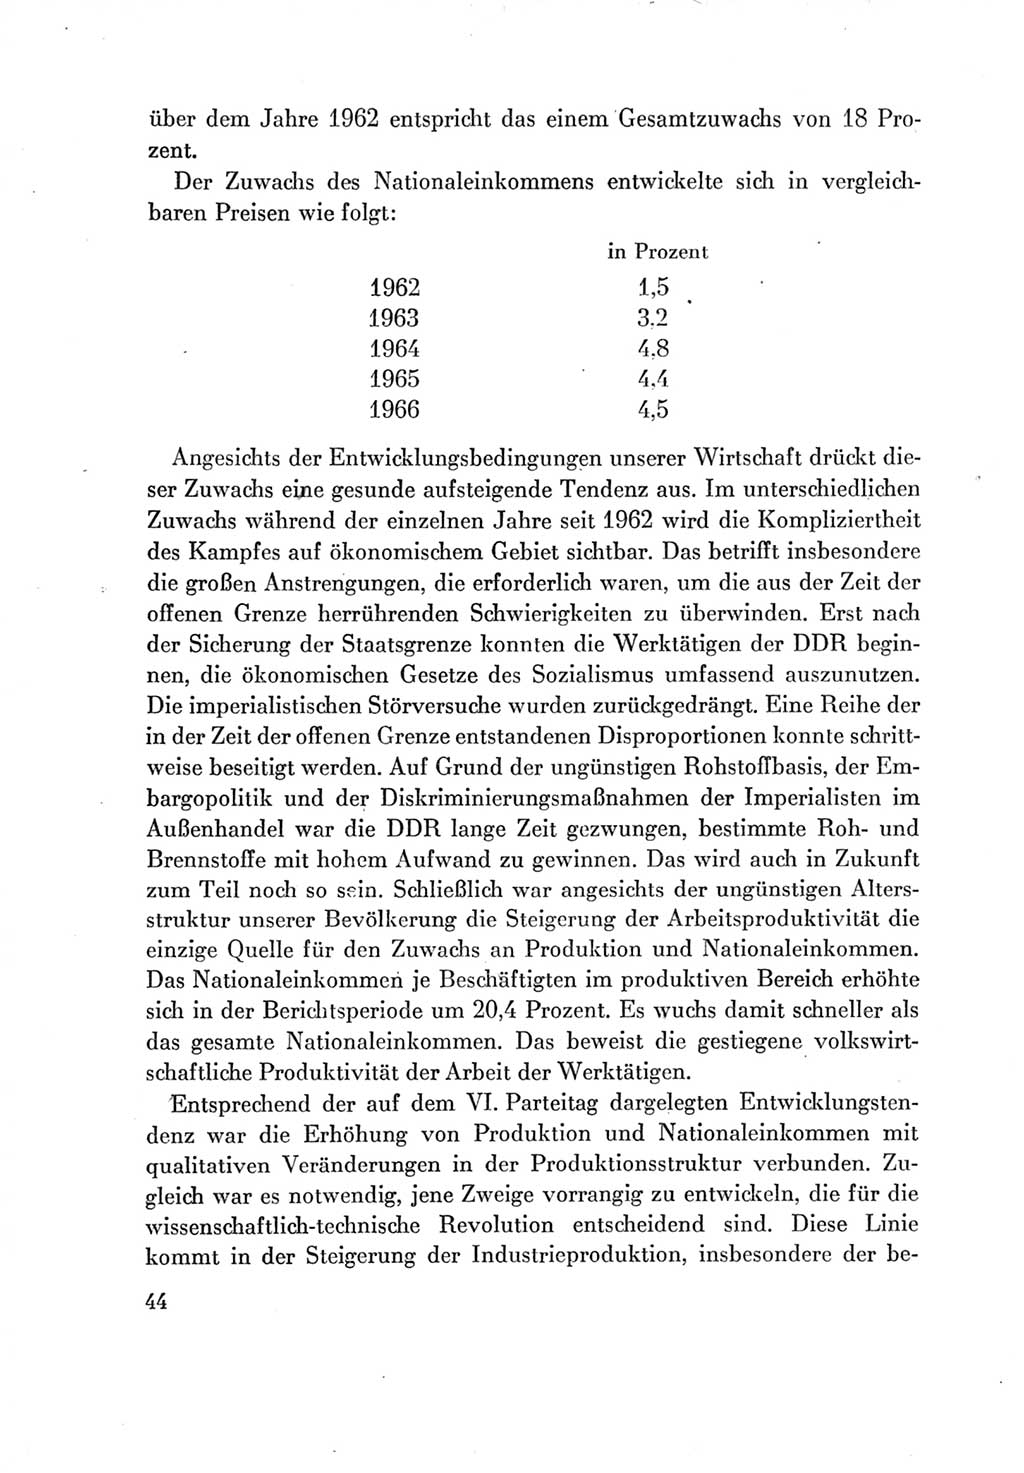 Protokoll der Verhandlungen des Ⅶ. Parteitages der Sozialistischen Einheitspartei Deutschlands (SED) [Deutsche Demokratische Republik (DDR)] 1967, Band Ⅳ, Seite 44 (Prot. Verh. Ⅶ. PT SED DDR 1967, Bd. Ⅳ, S. 44)